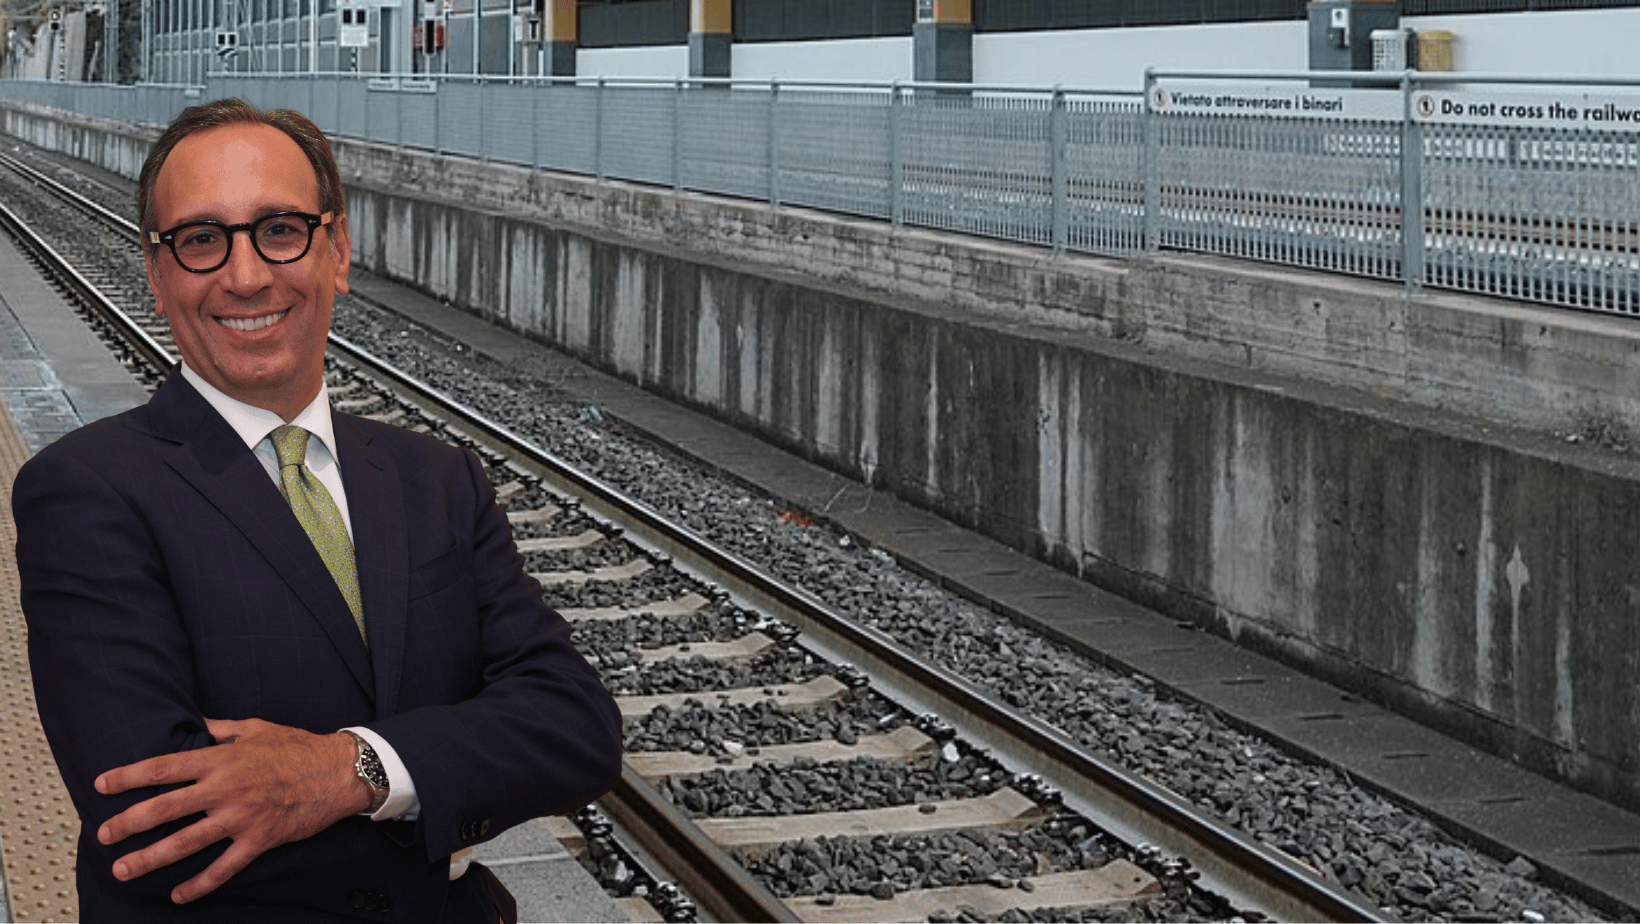 L’assessore Alessandro Aricò svela il “bluff” sul potenziamento ferroviario in Sicilia